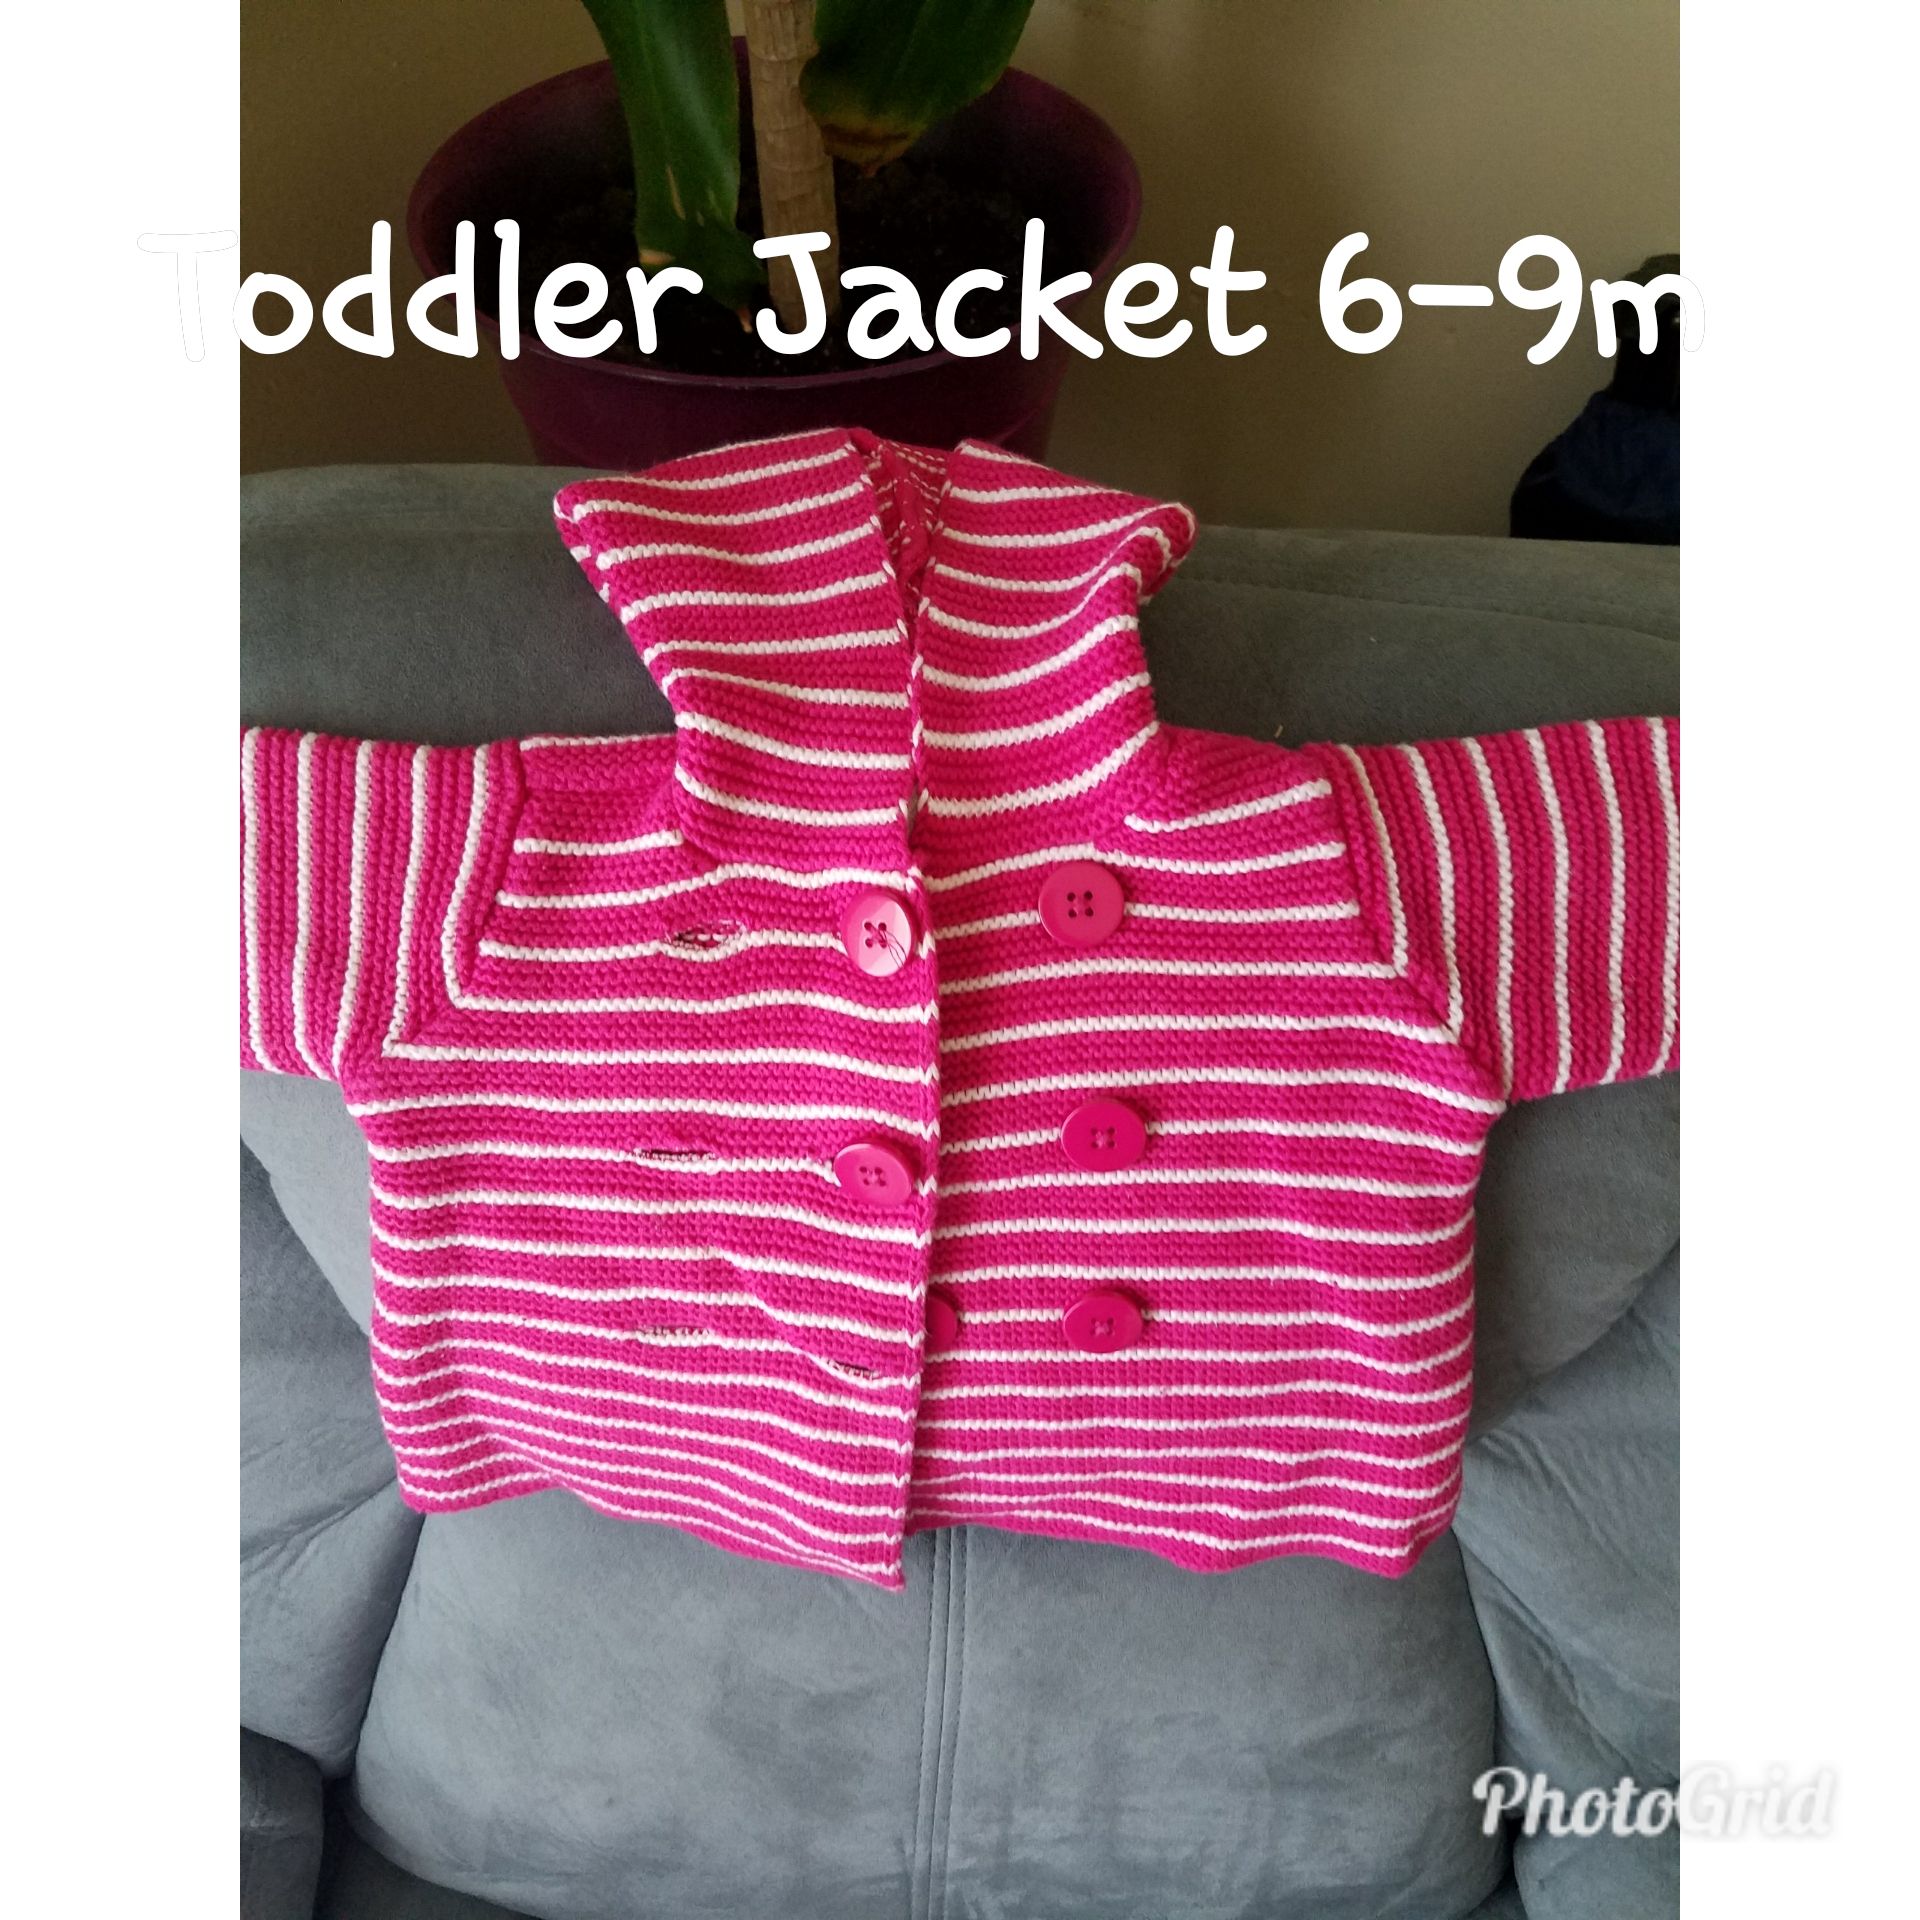 Toddler Jacket 6-9m